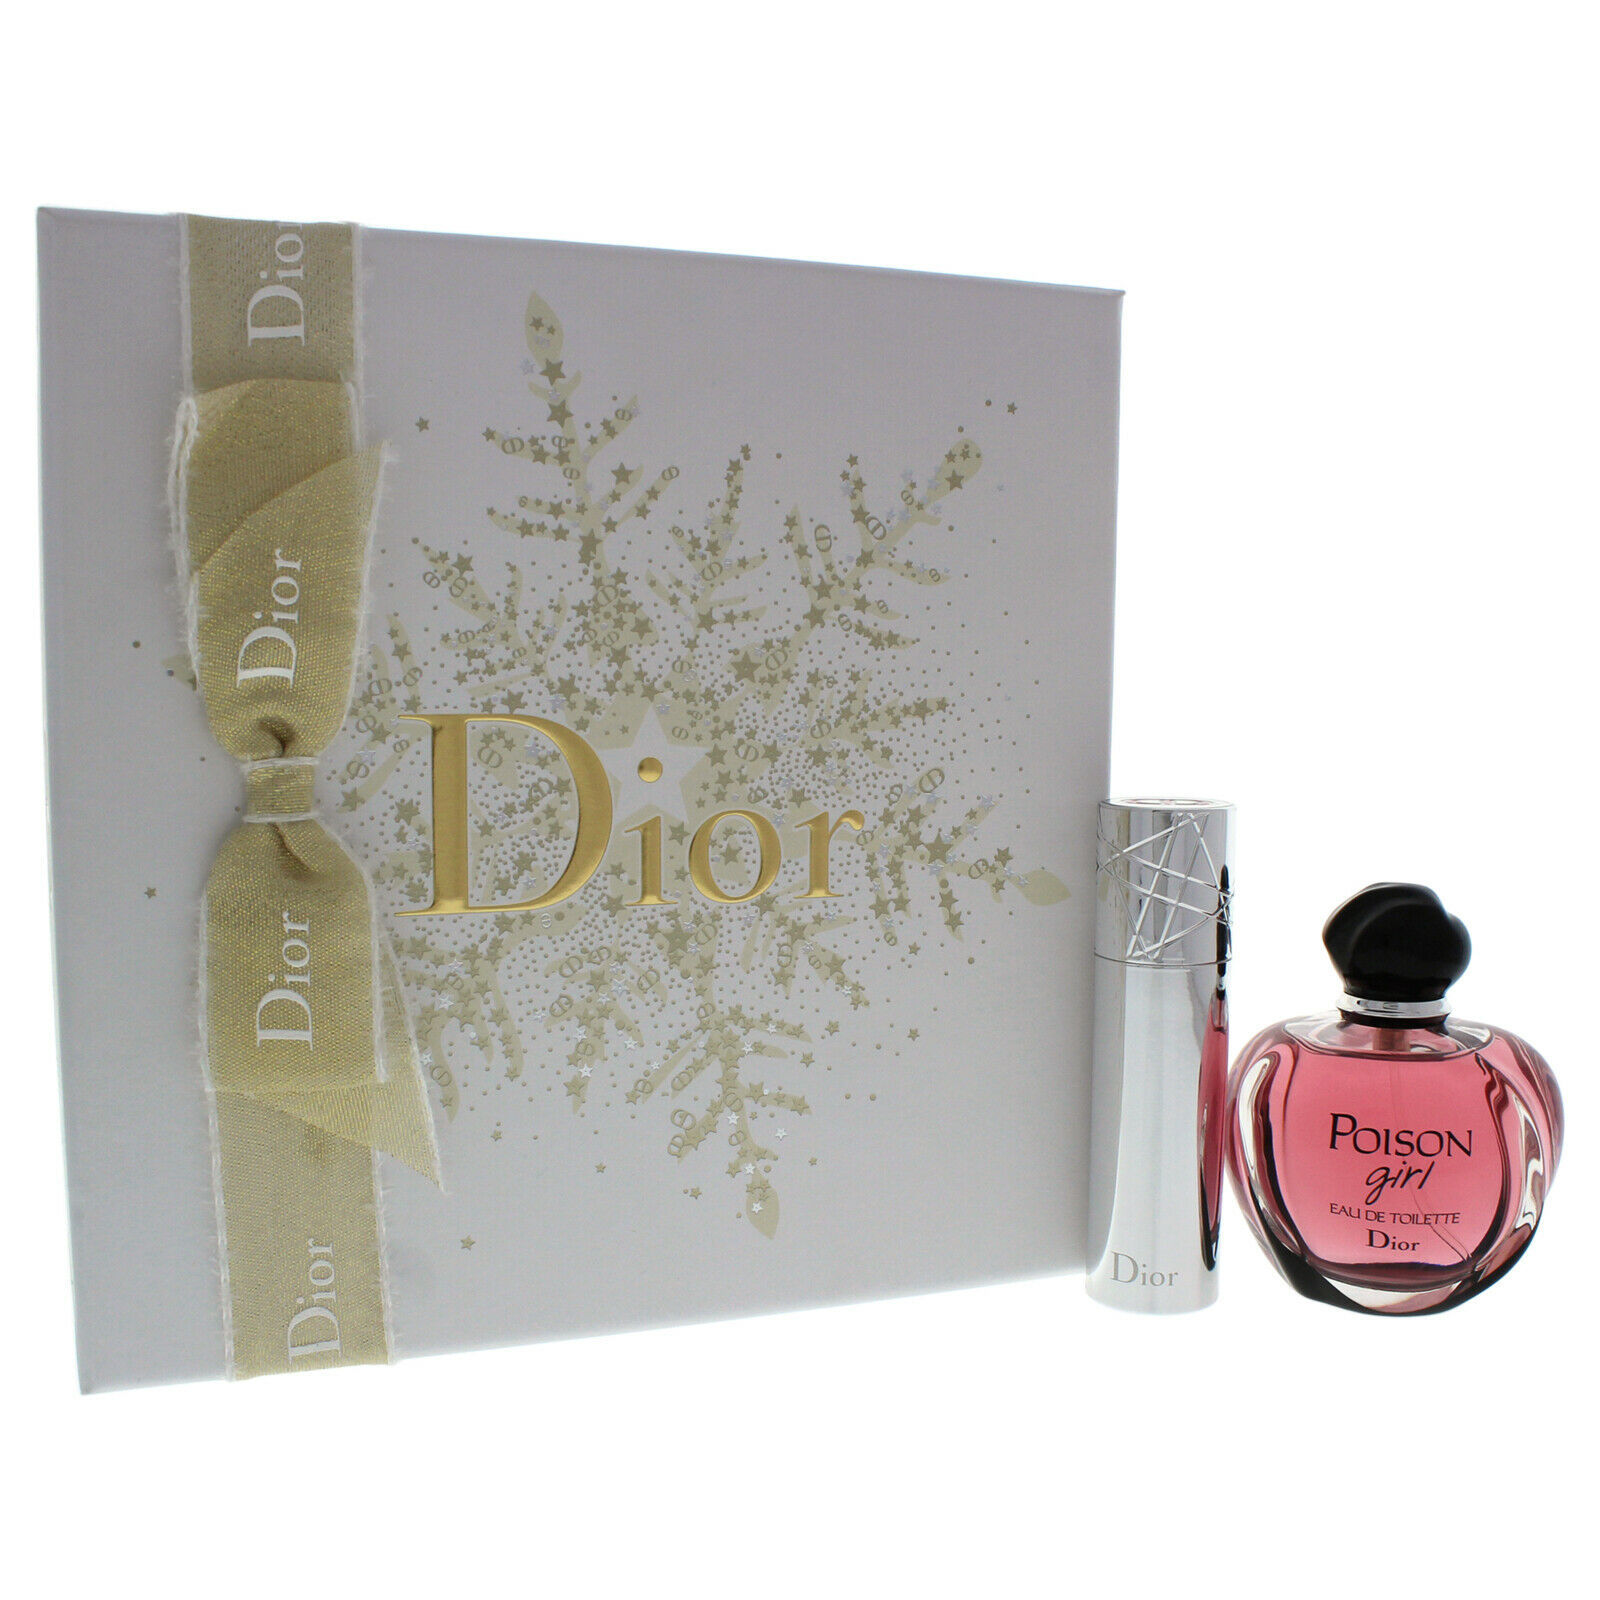 Dior poison gift set